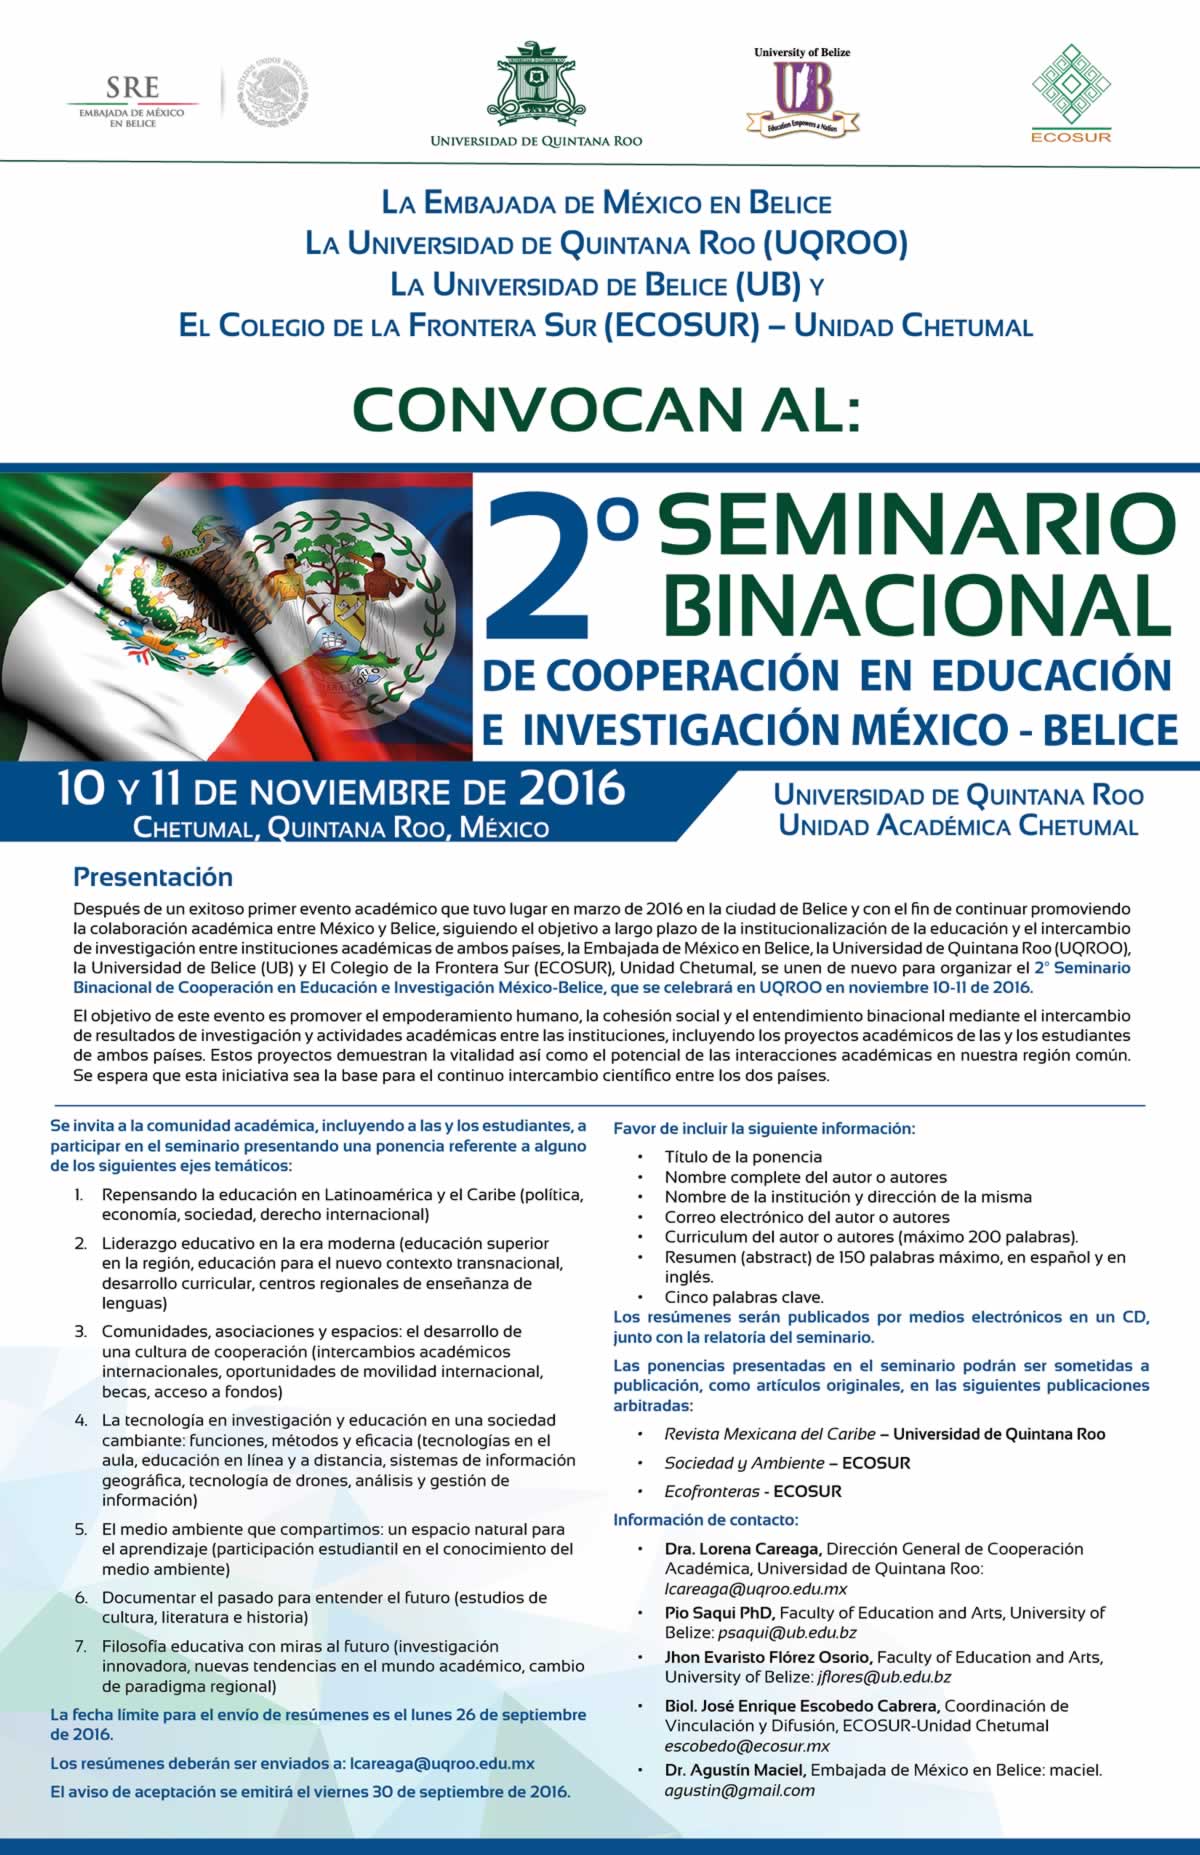 II-seminario-binacional-de-cooperacion-en-educacion-e-investigacion-mexico-belice.jpg